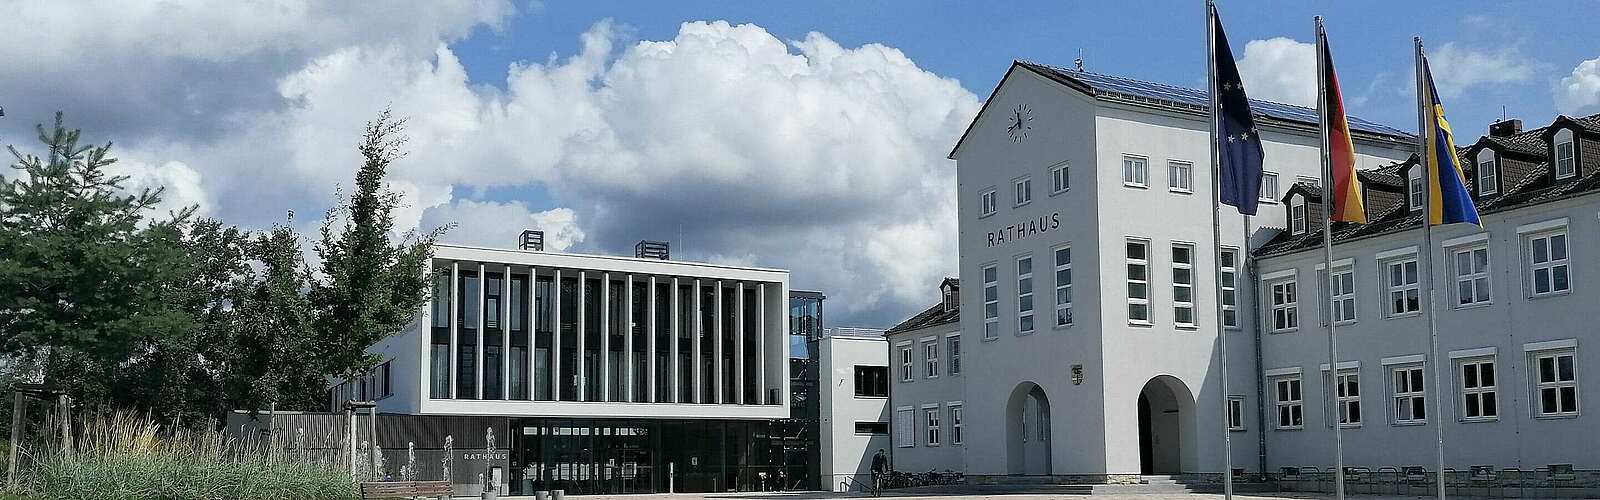 The town hall in Hohen Neuendorf,
        
    

        
        
            Picture: Kein Urheber bekannt